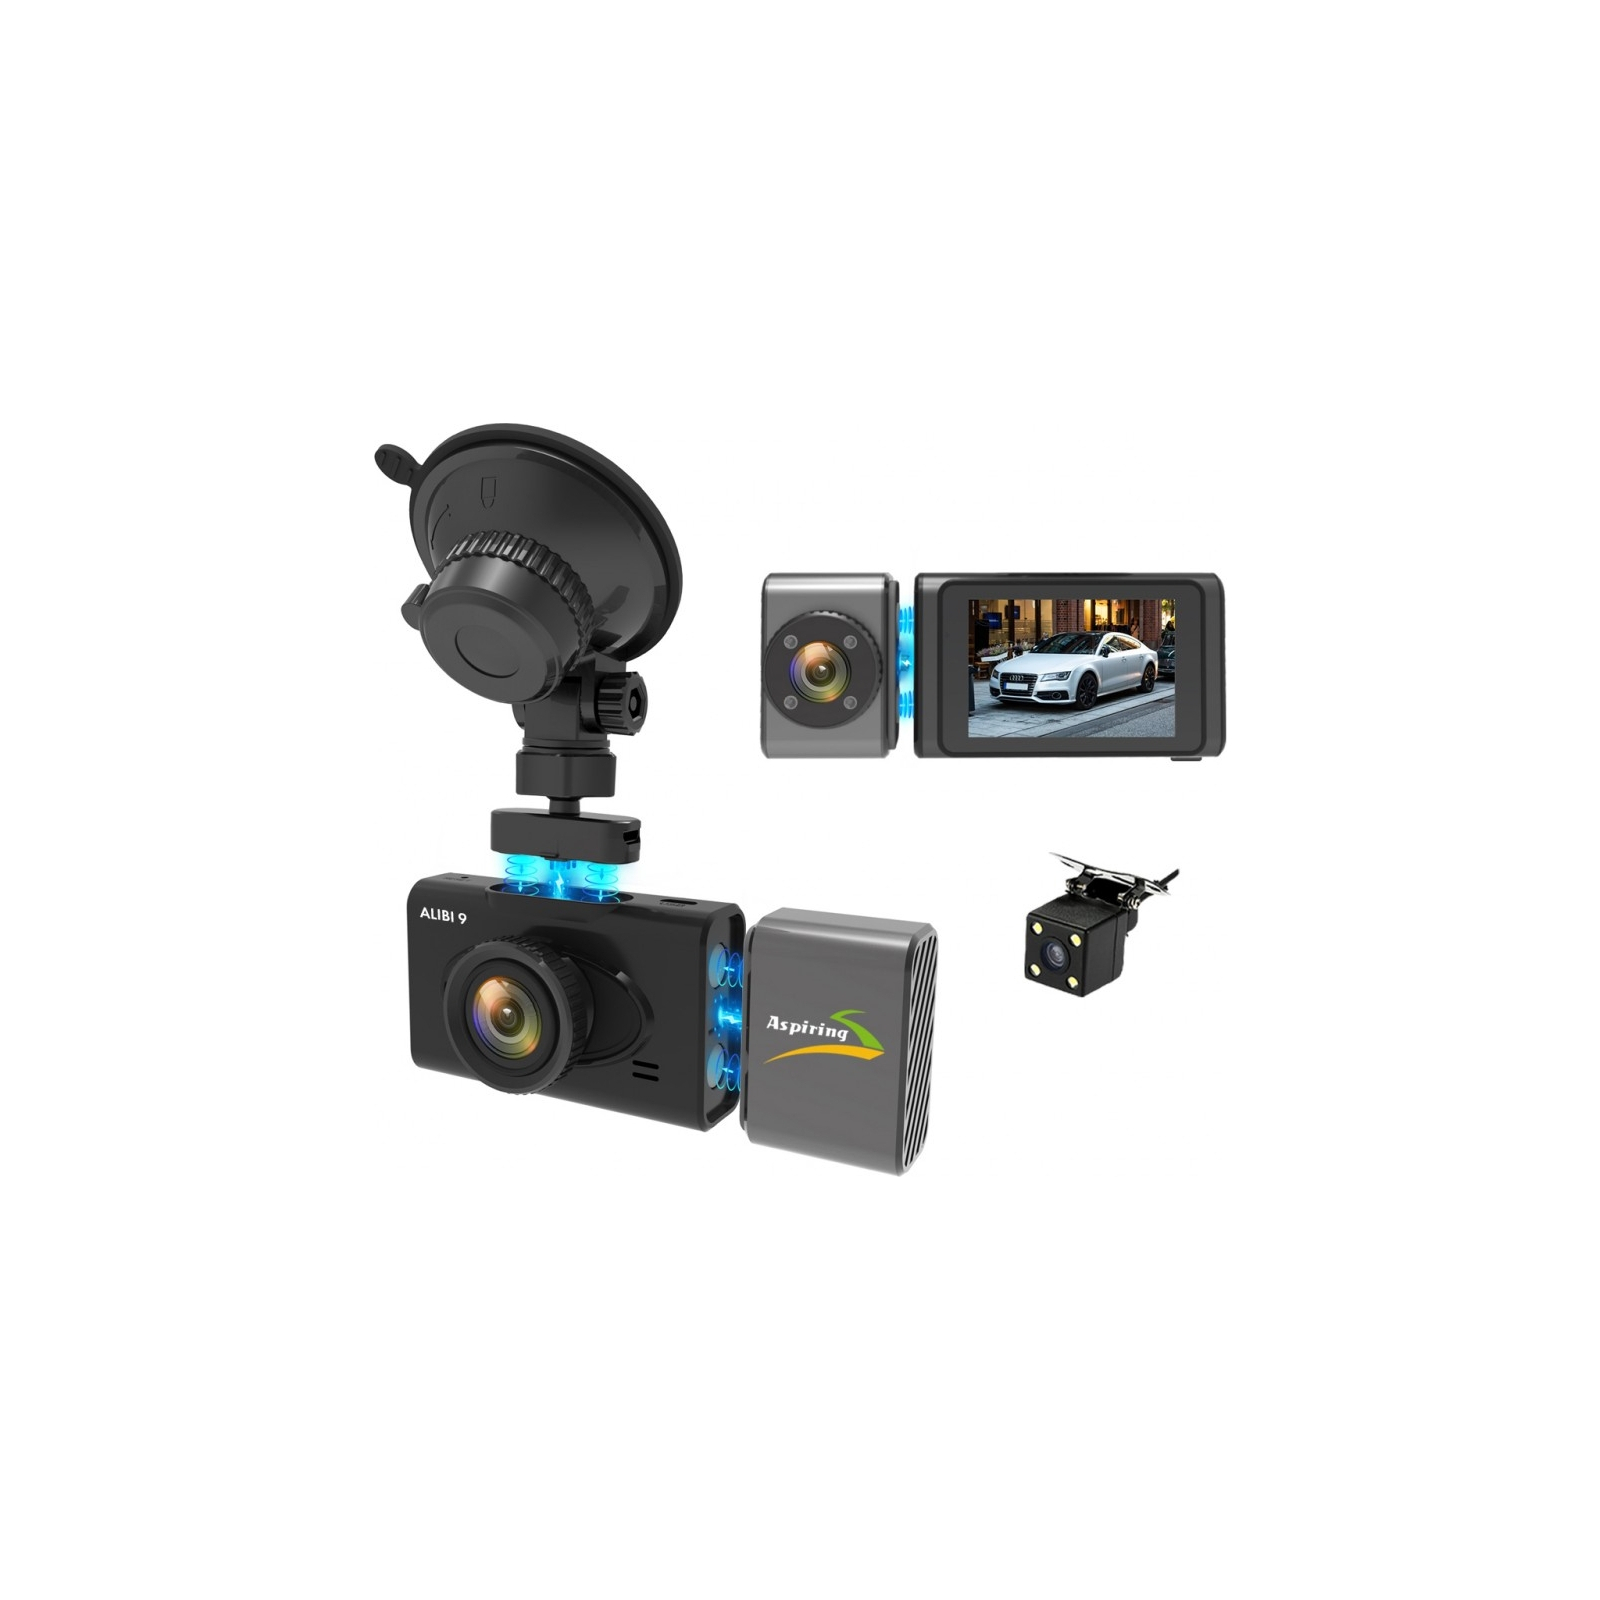 Відеореєстратор Aspiring Alibi 9 GPS, 3 Cameras, Speedcam (Aspiring Alibi 9 GPS, 3 Cameras, Speedcam) зображення 6